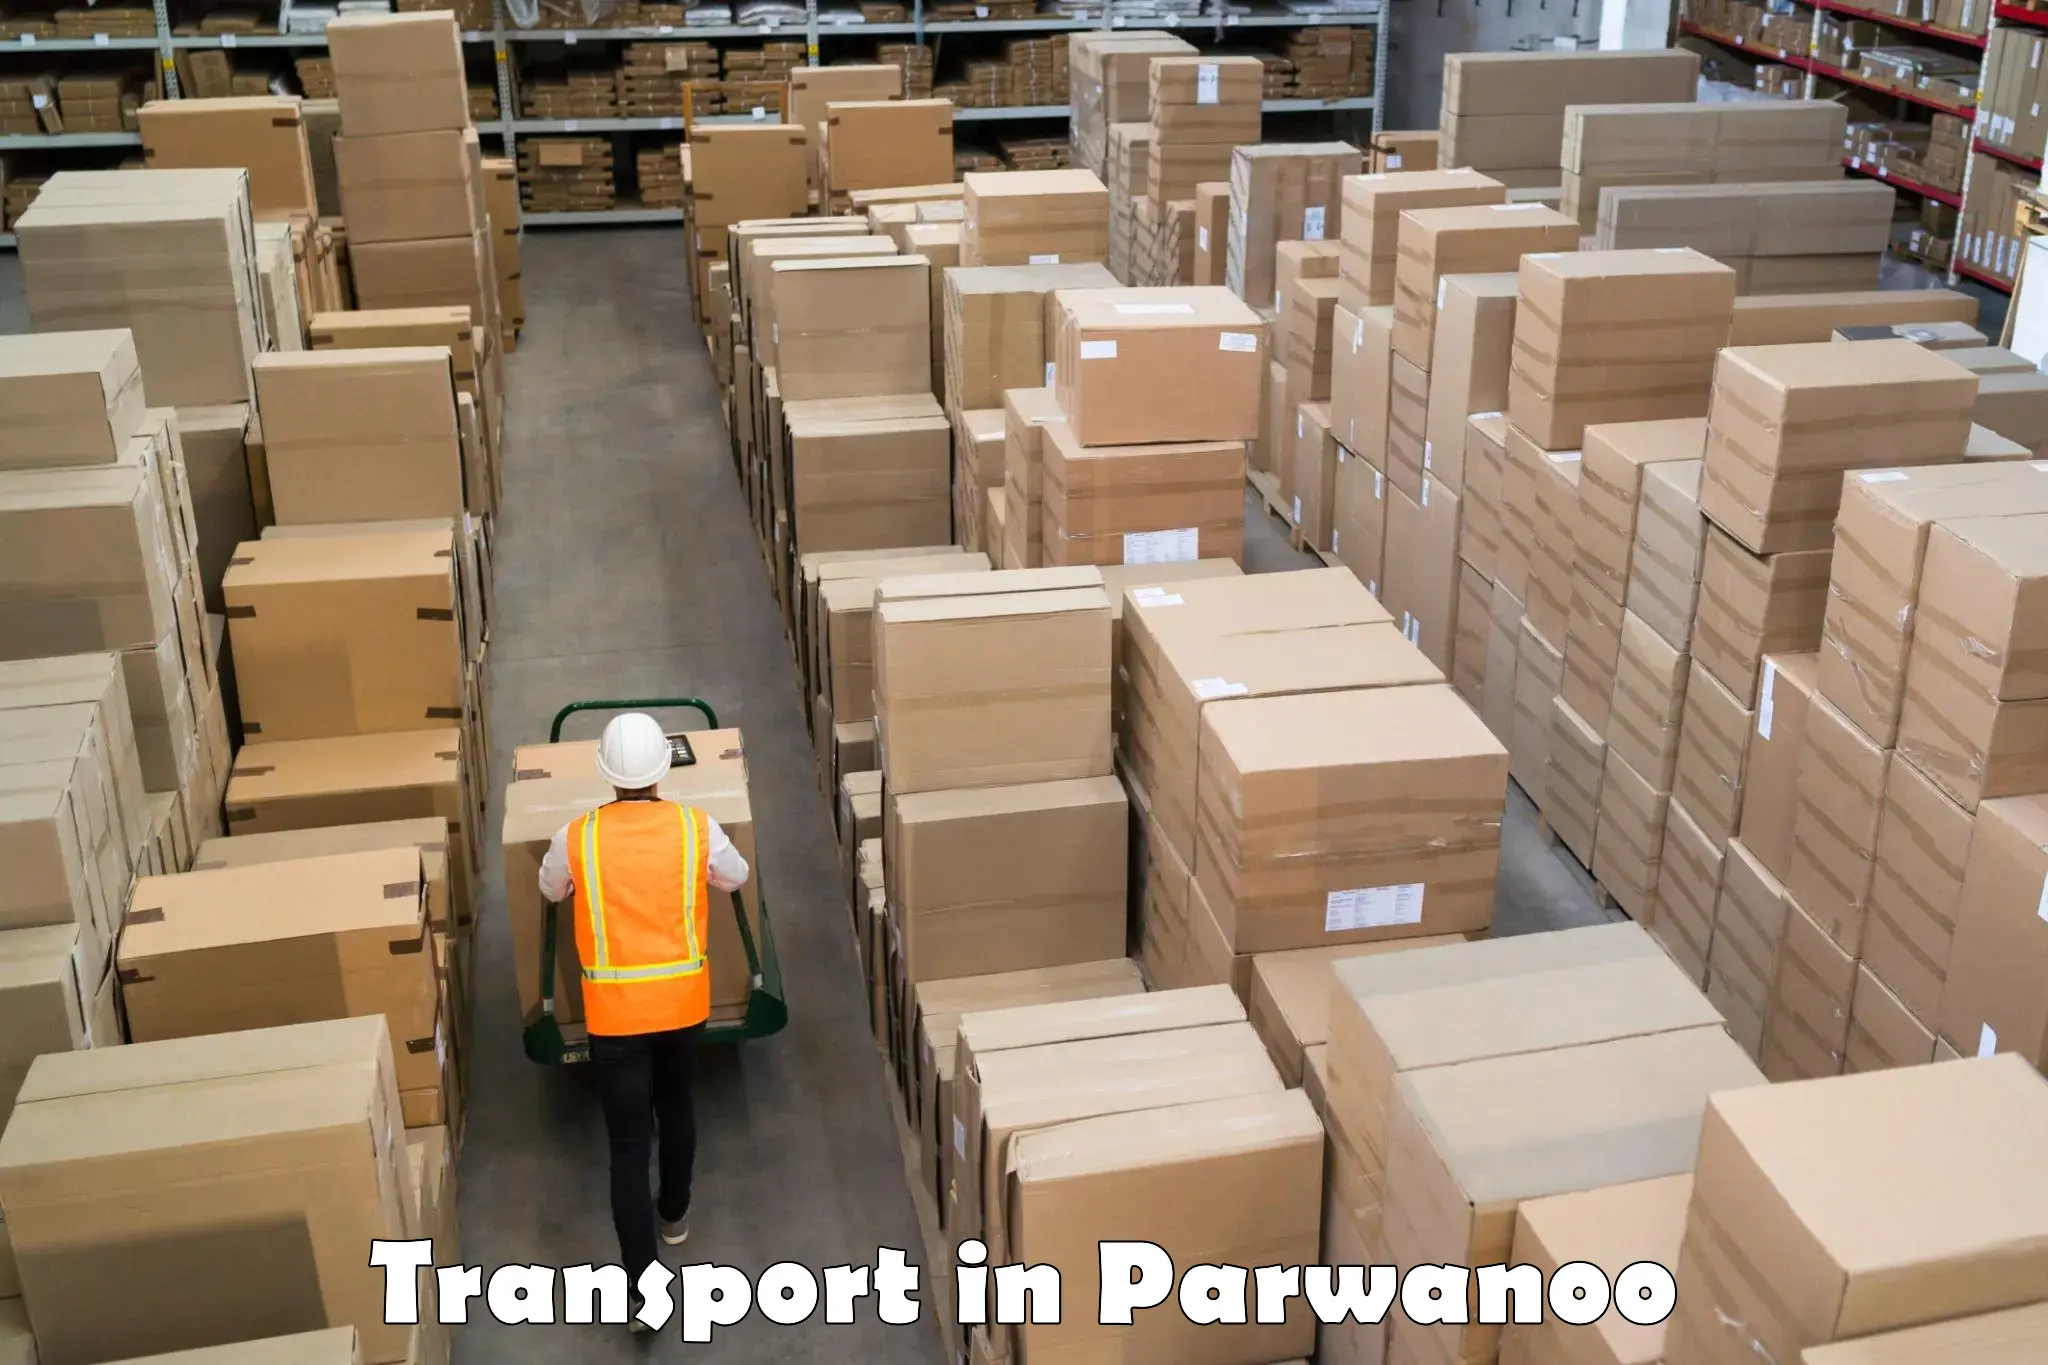 Interstate transport services in Parwanoo